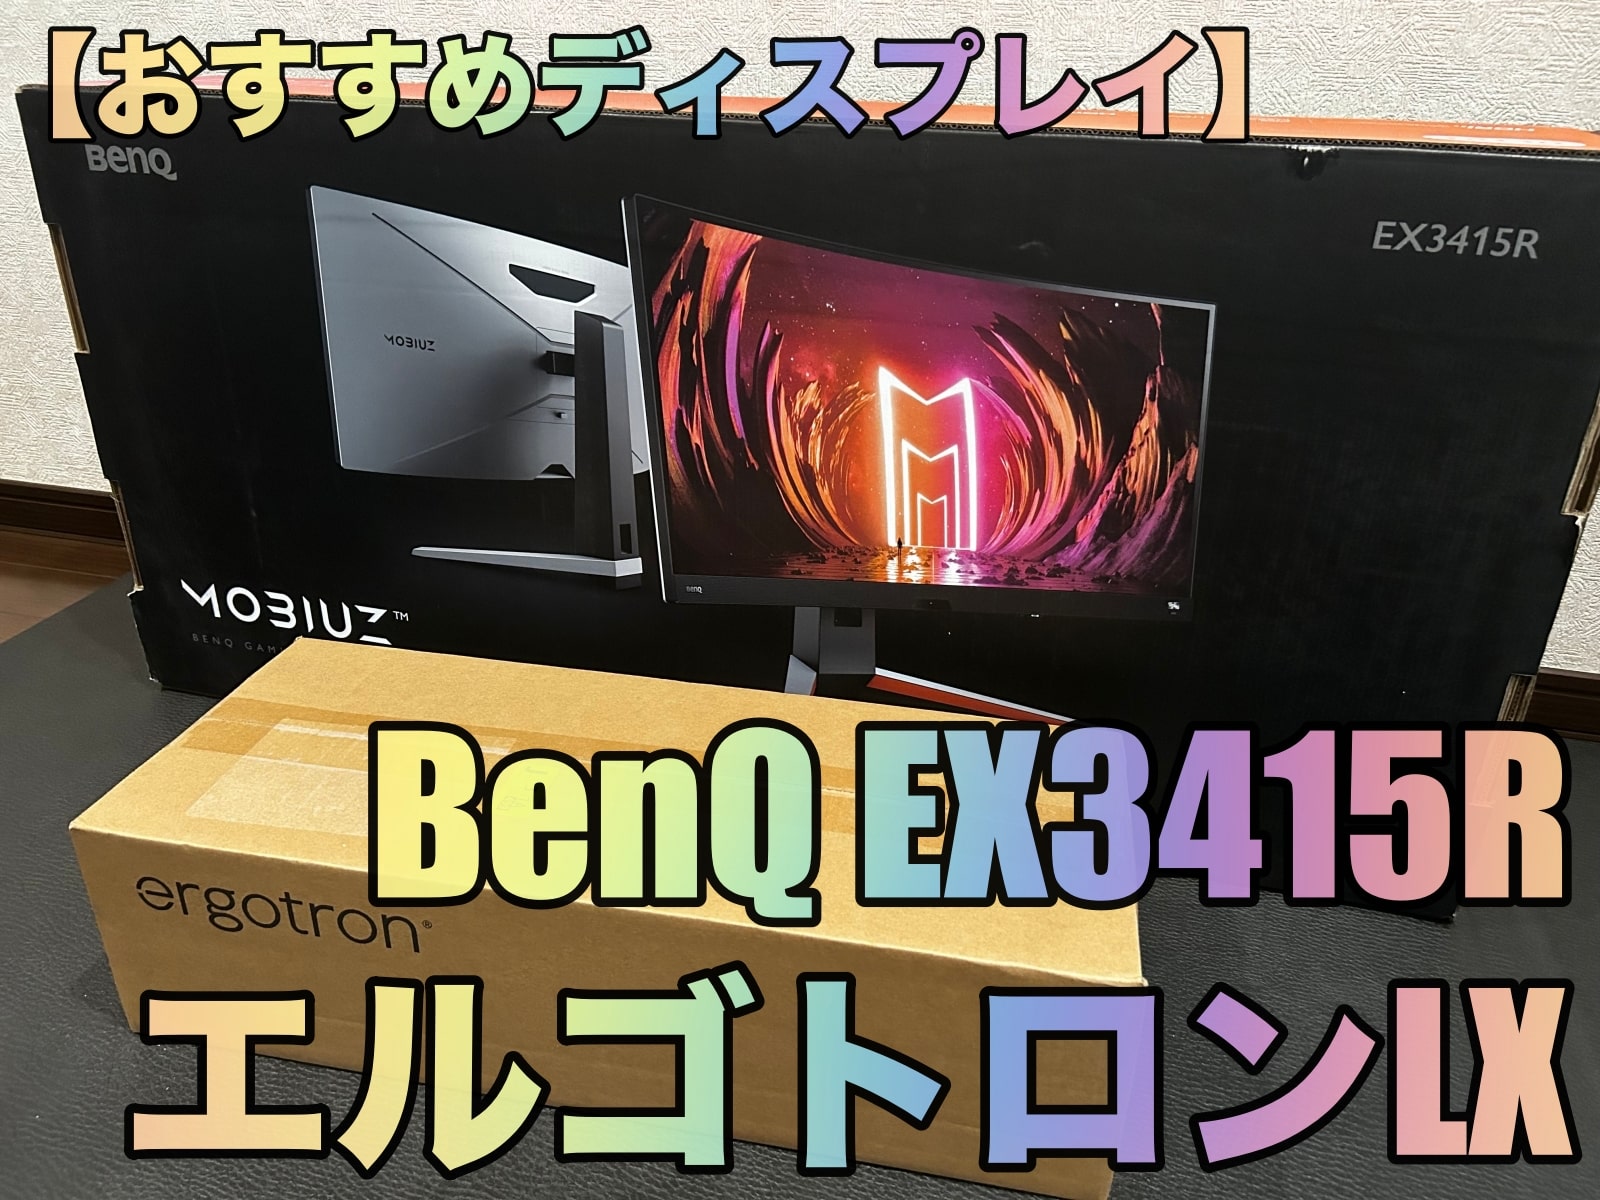 【おすすめディスプレイ】BenQ EX3415R+エルゴトロンLX詳細レビュー